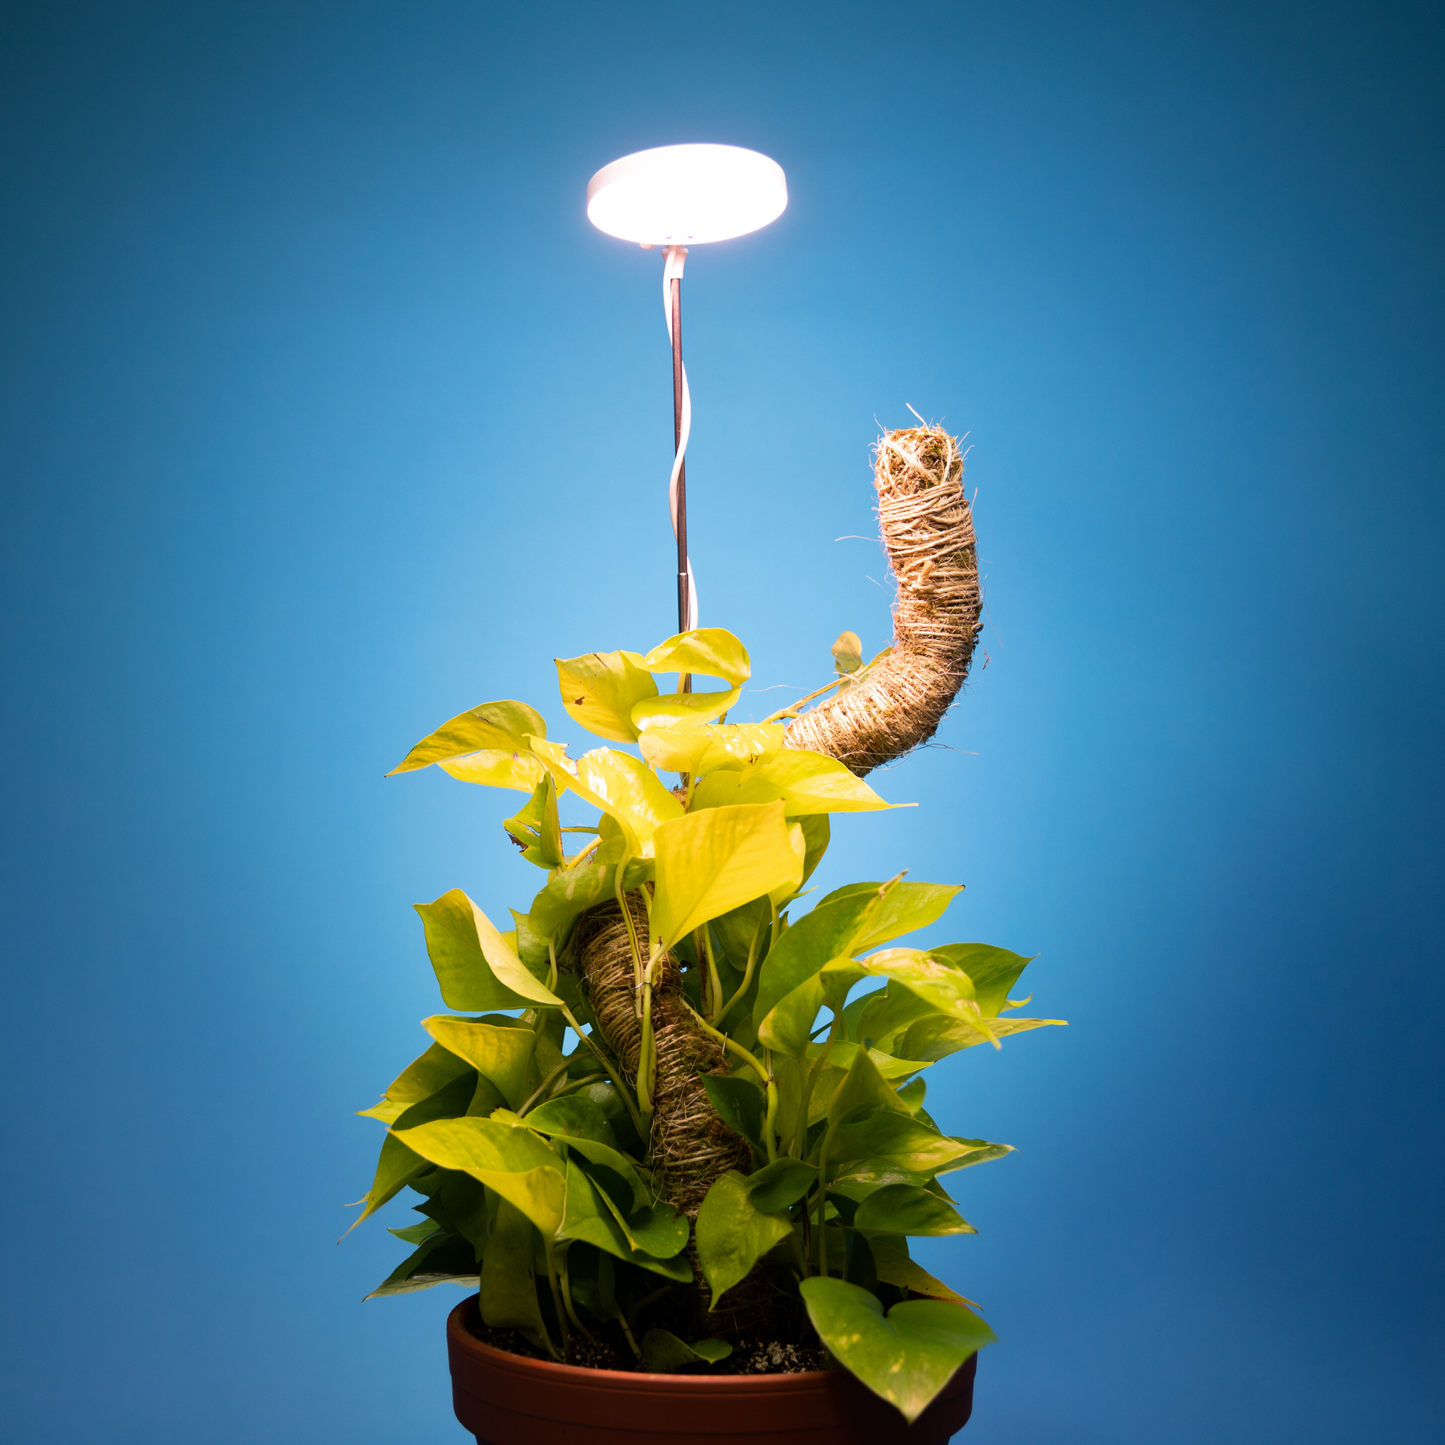 Mossify Adjustable LED Plant Light: Black